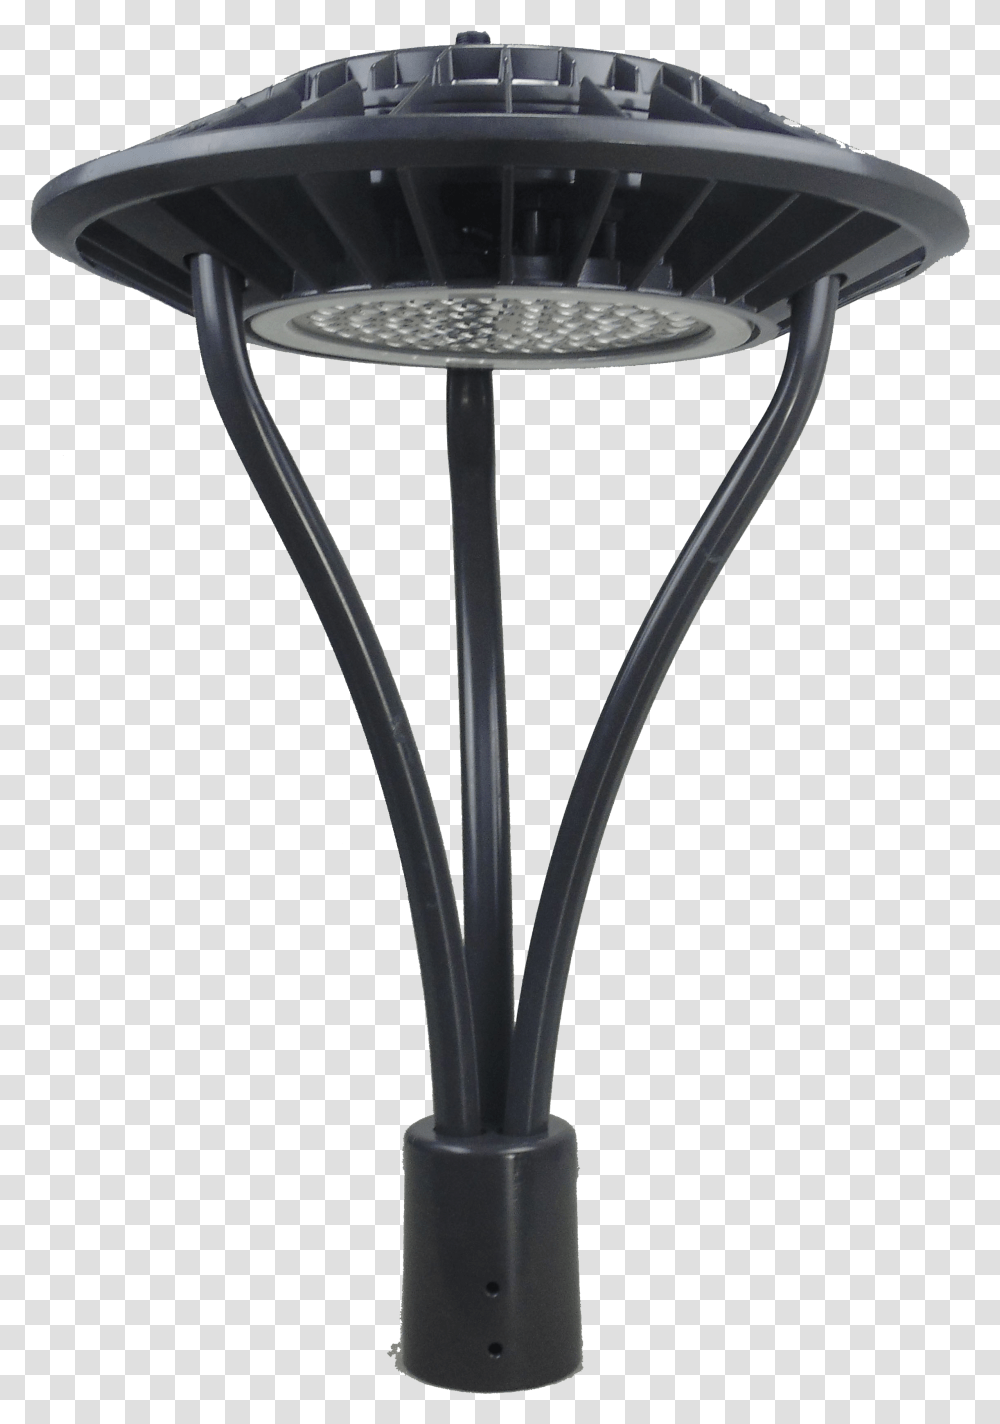 Lamp Posts Outdoor Light Poles For Parking Lot & Sidewalk Led Post Top Light, Lighting, Furniture, Hoop Transparent Png